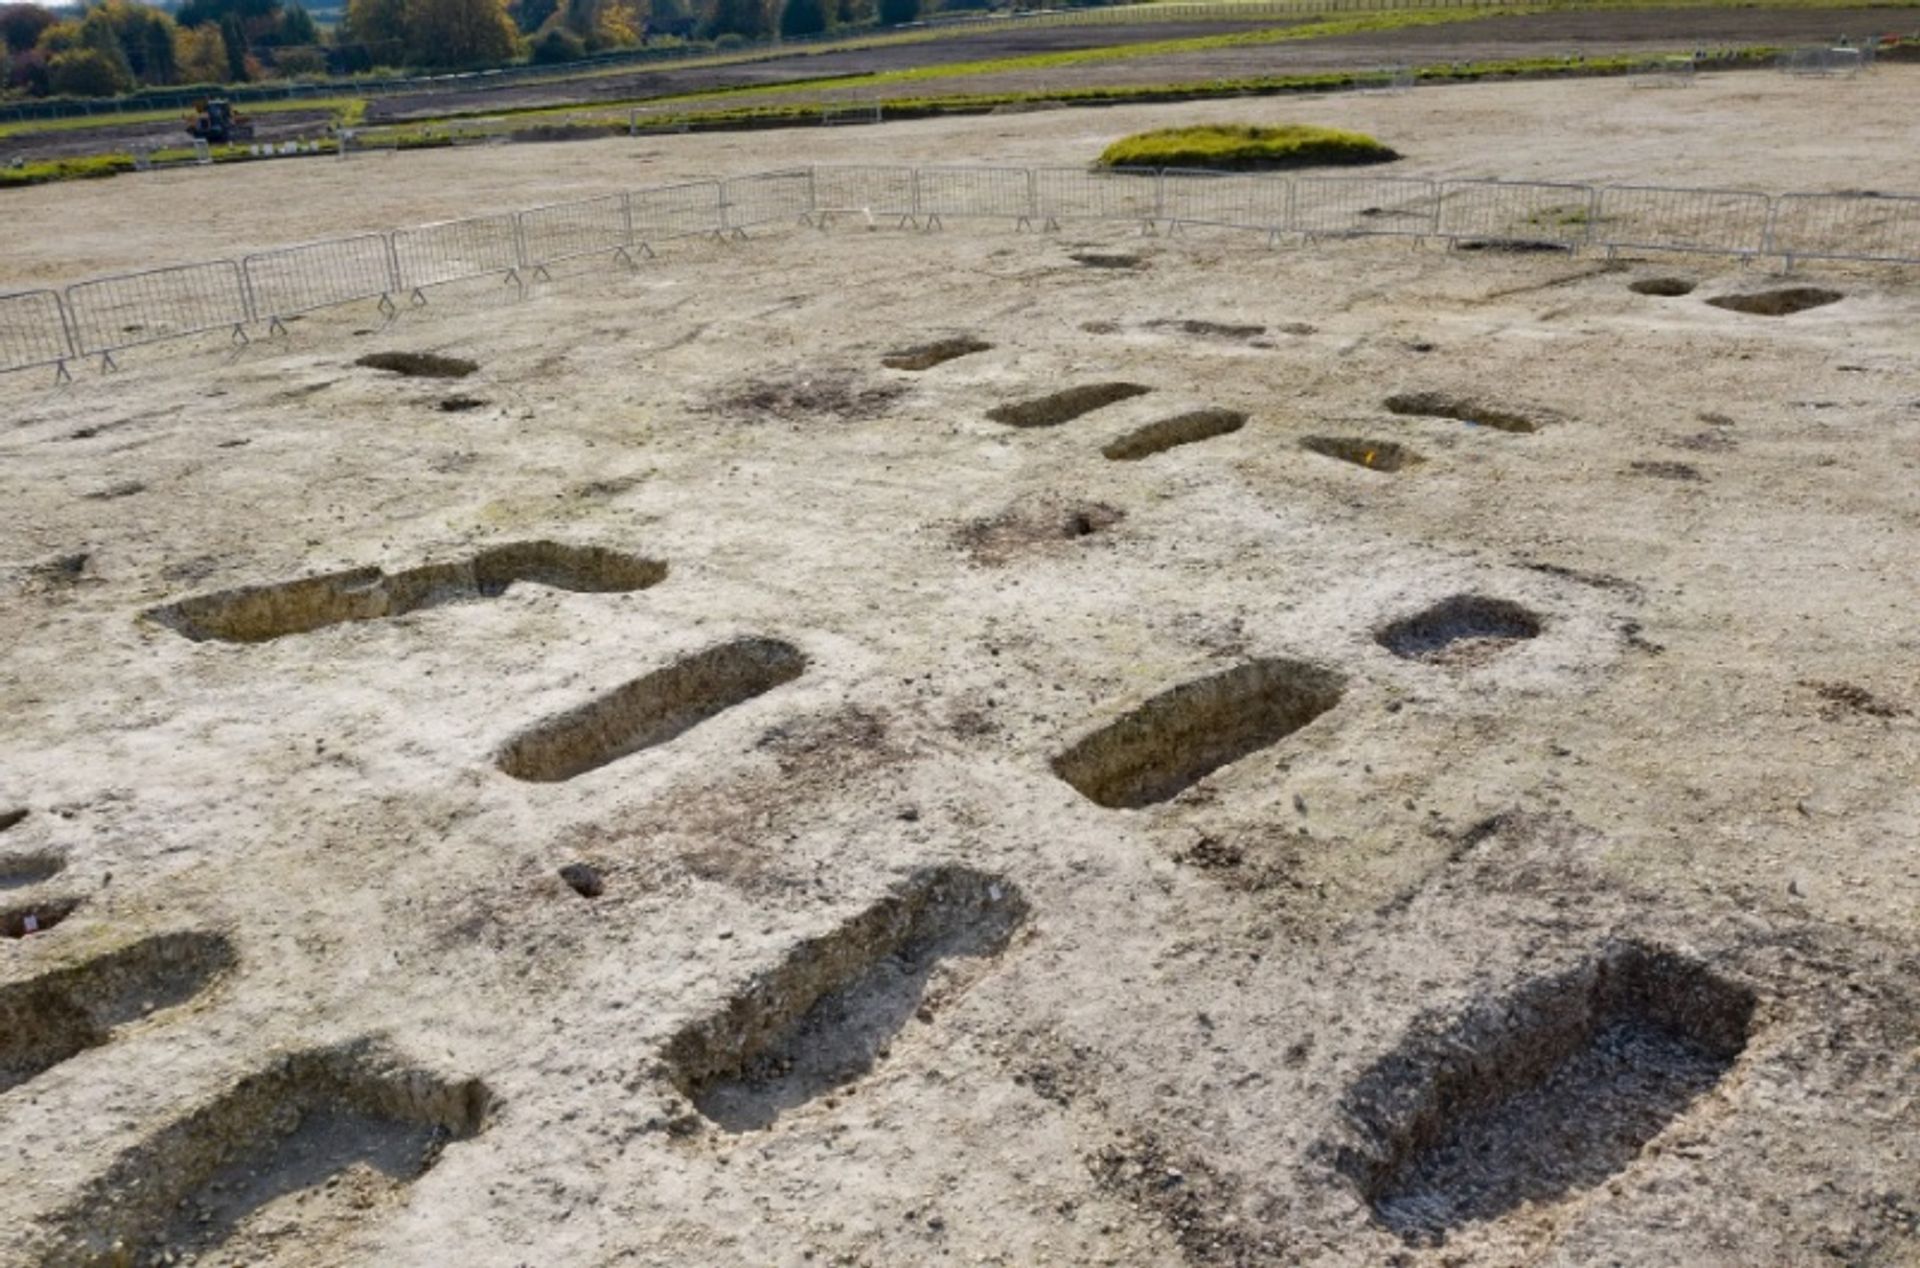 אתר קבורה אנגלו סכסוני התגלה בוונדובר

צילום: HS2